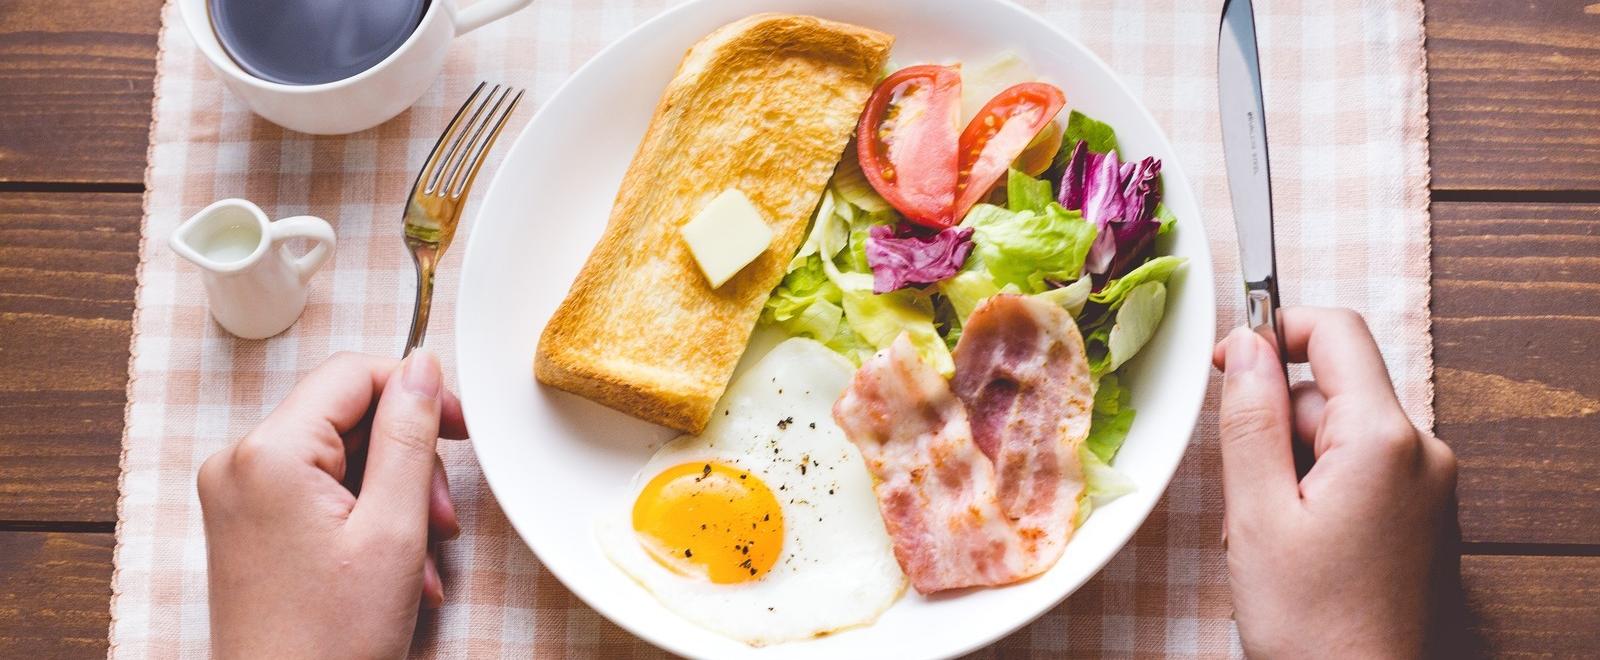 バターののったトーストに野菜サラダとカリカリベーコンが添えられた朝ごはんの写真